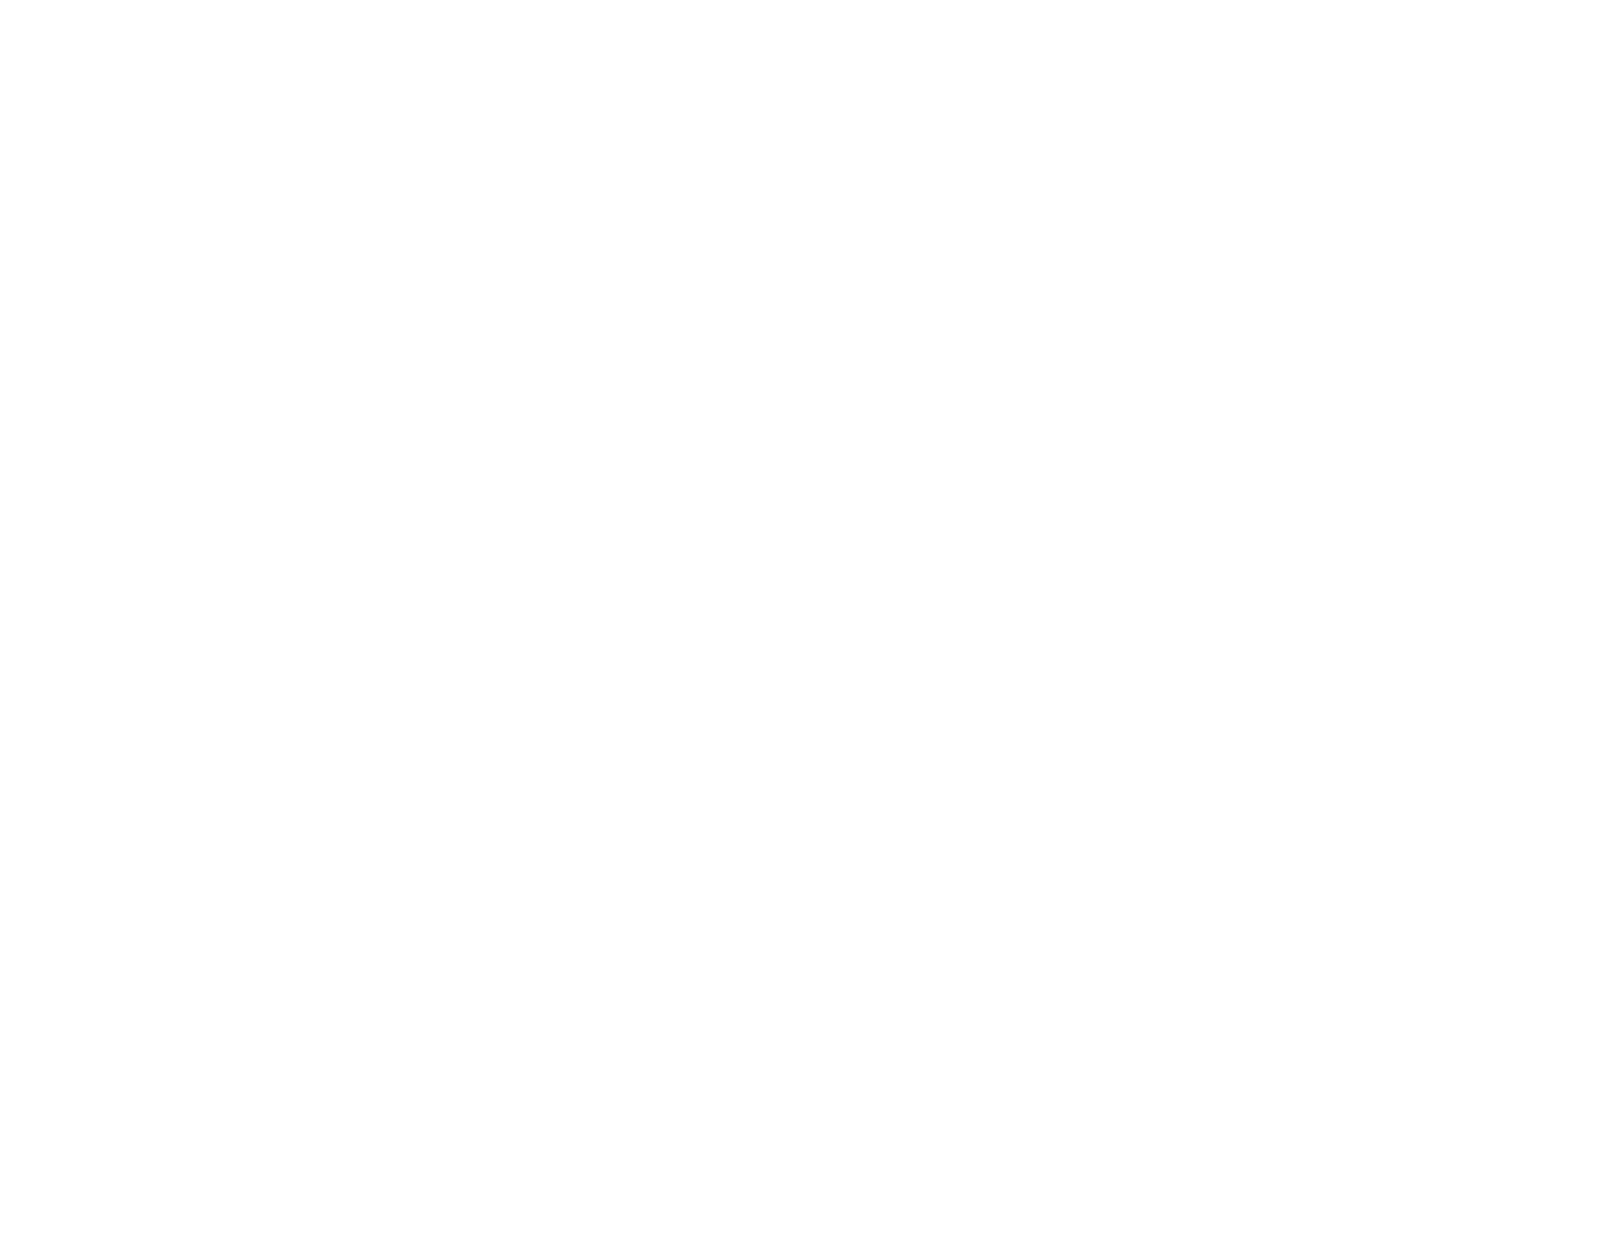 Fresenius Medical Care logo for dark backgrounds (transparent PNG)